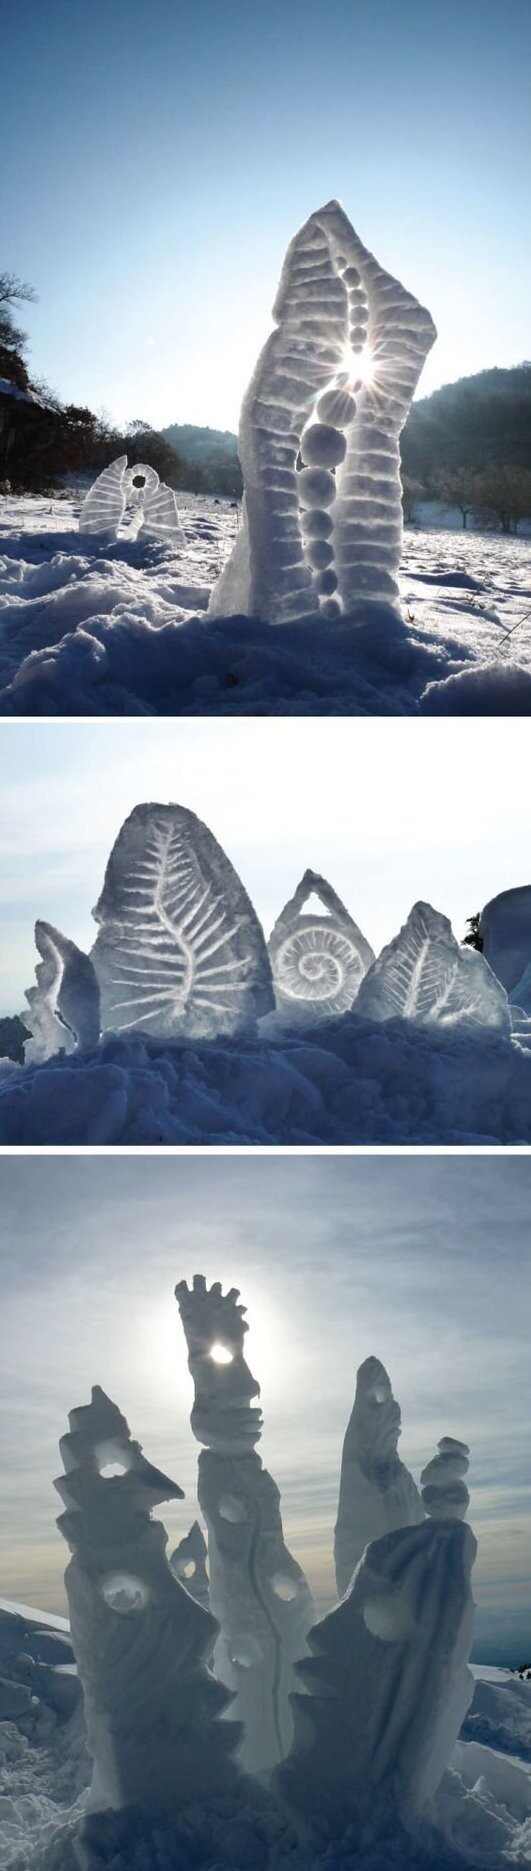 1. Alain Berne трансформирует природный ландшафт в снежные скульптуры